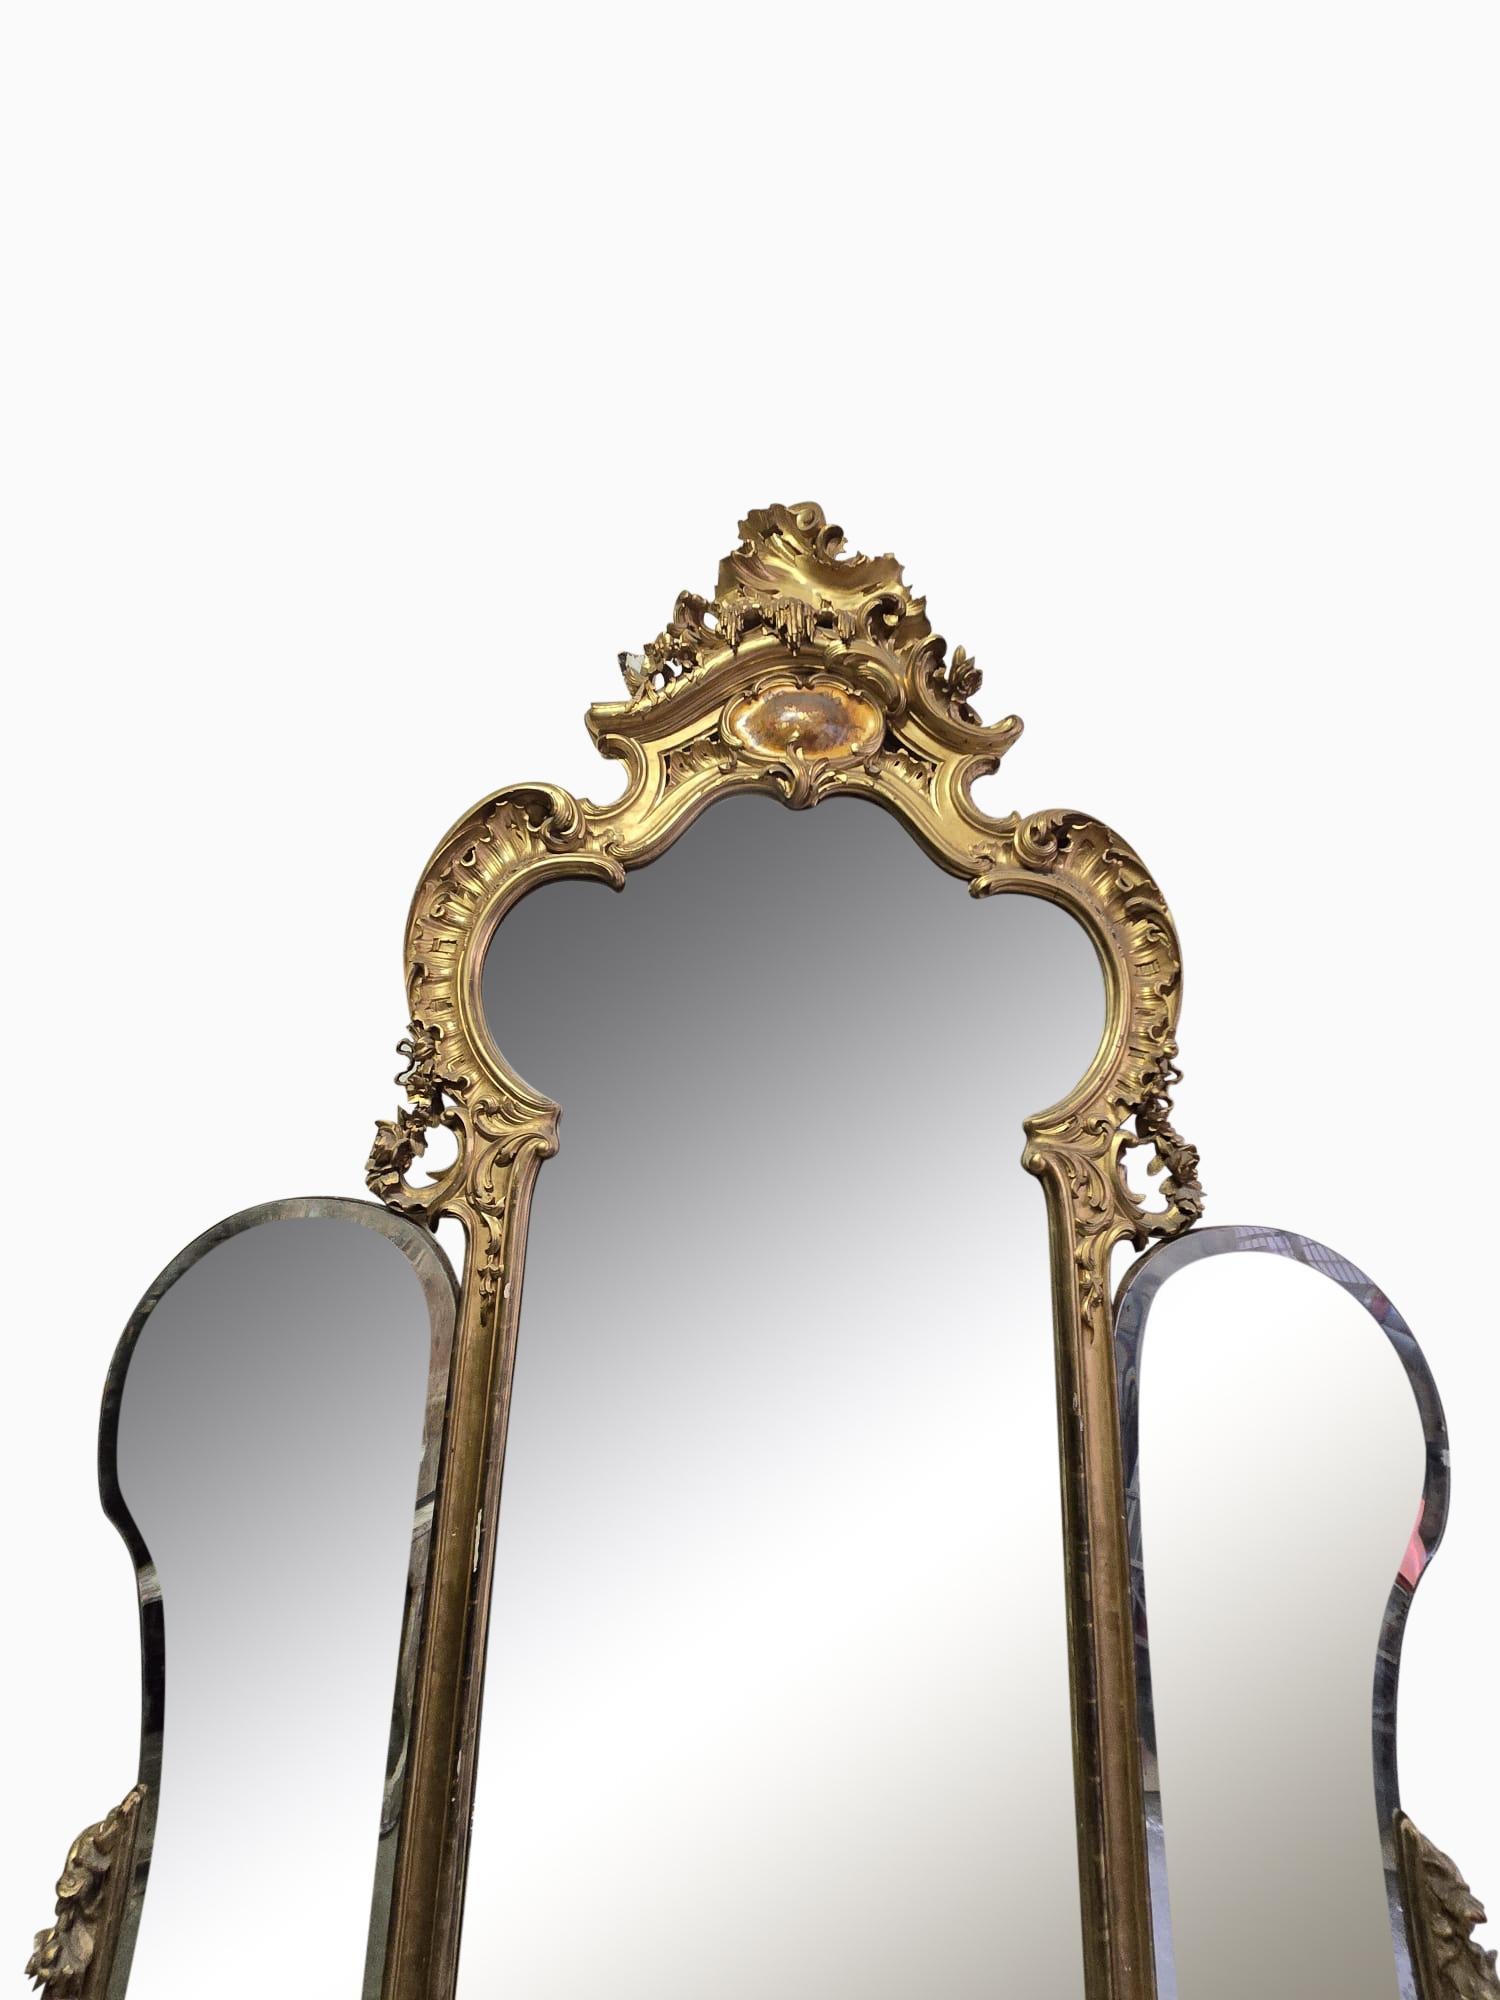 Plongez dans l'élégance du 19ème siècle avec notre monumental miroir français en bois doré. Mesurant 300x170 cm, ce miroir transcende la simple décoration ; c'est une pièce d'apparat qui respire l'histoire et la sophistication.

Le cadre en bois